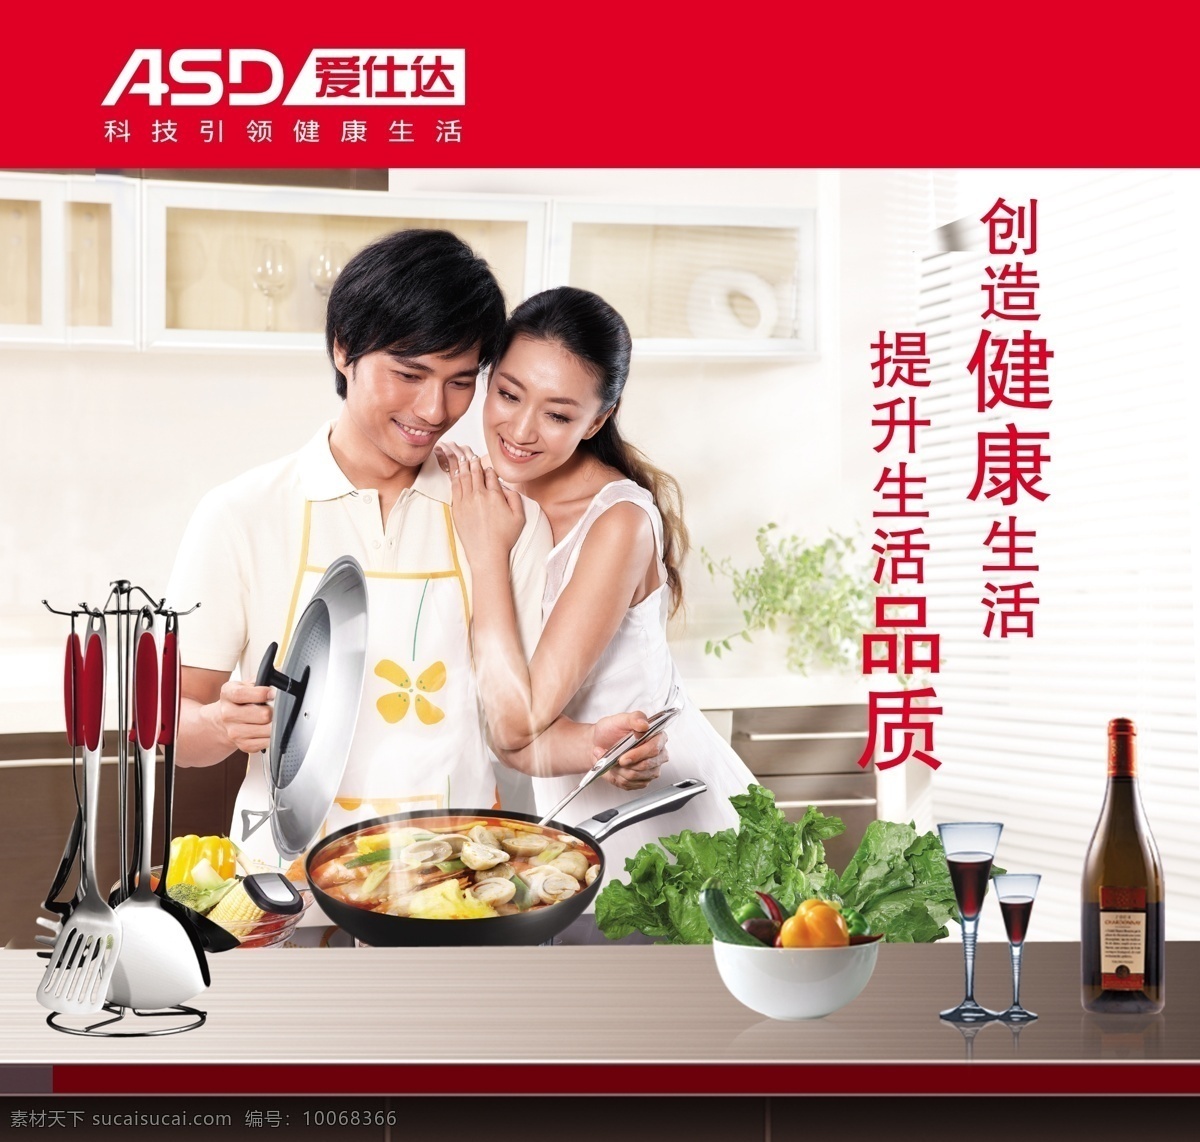 爱 仕达 宣传 画面 酒瓶 厨房人物 各类餐具 还有 鲜美 蔬菜 标志 无 烟锅 psd源文件